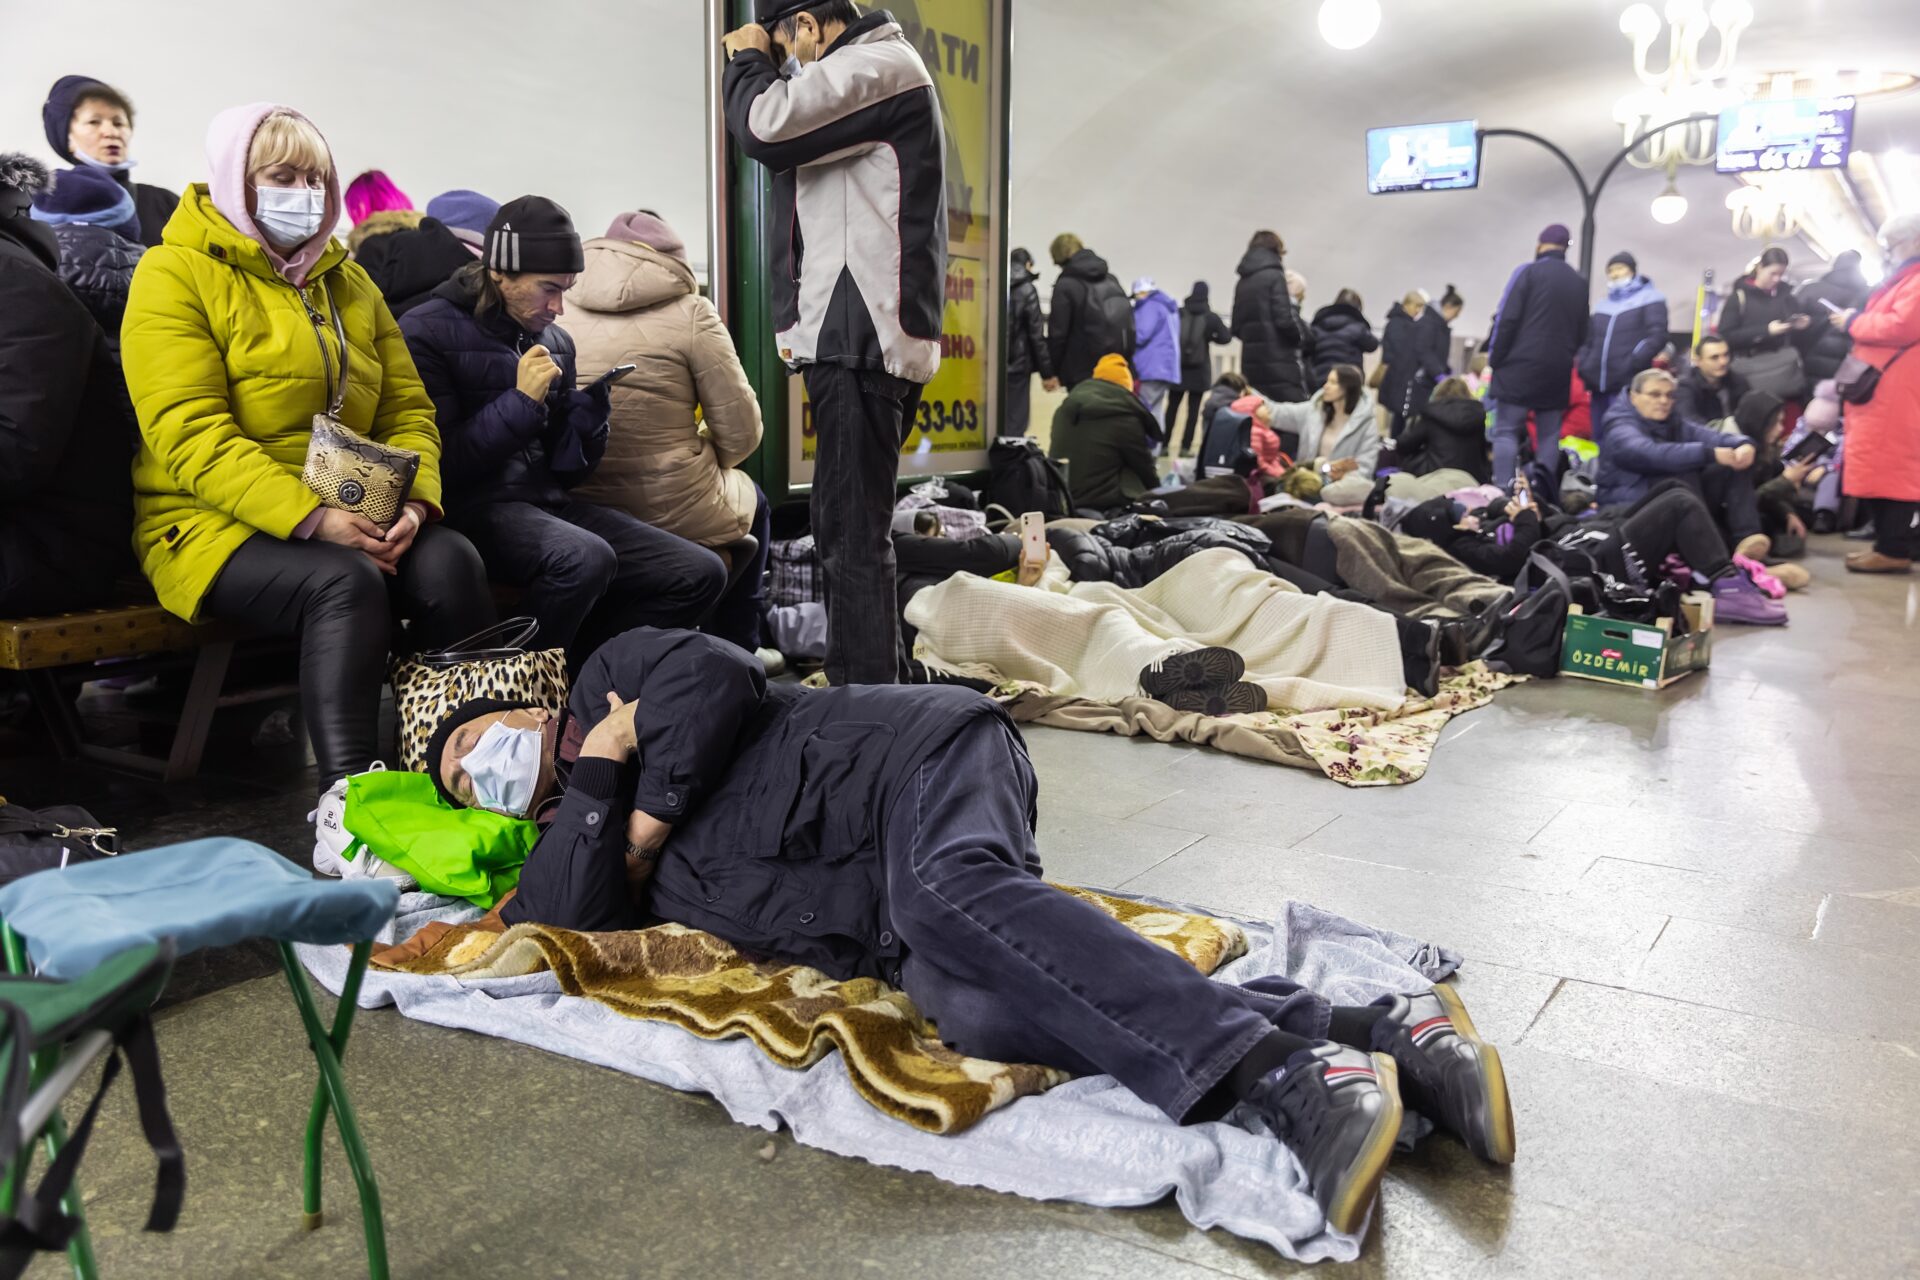 Estação de metrô na Ucrânia serve de abrigo para milhares de pessoas durante os ataques russos | Foto: Drop of Light/Shutterstock